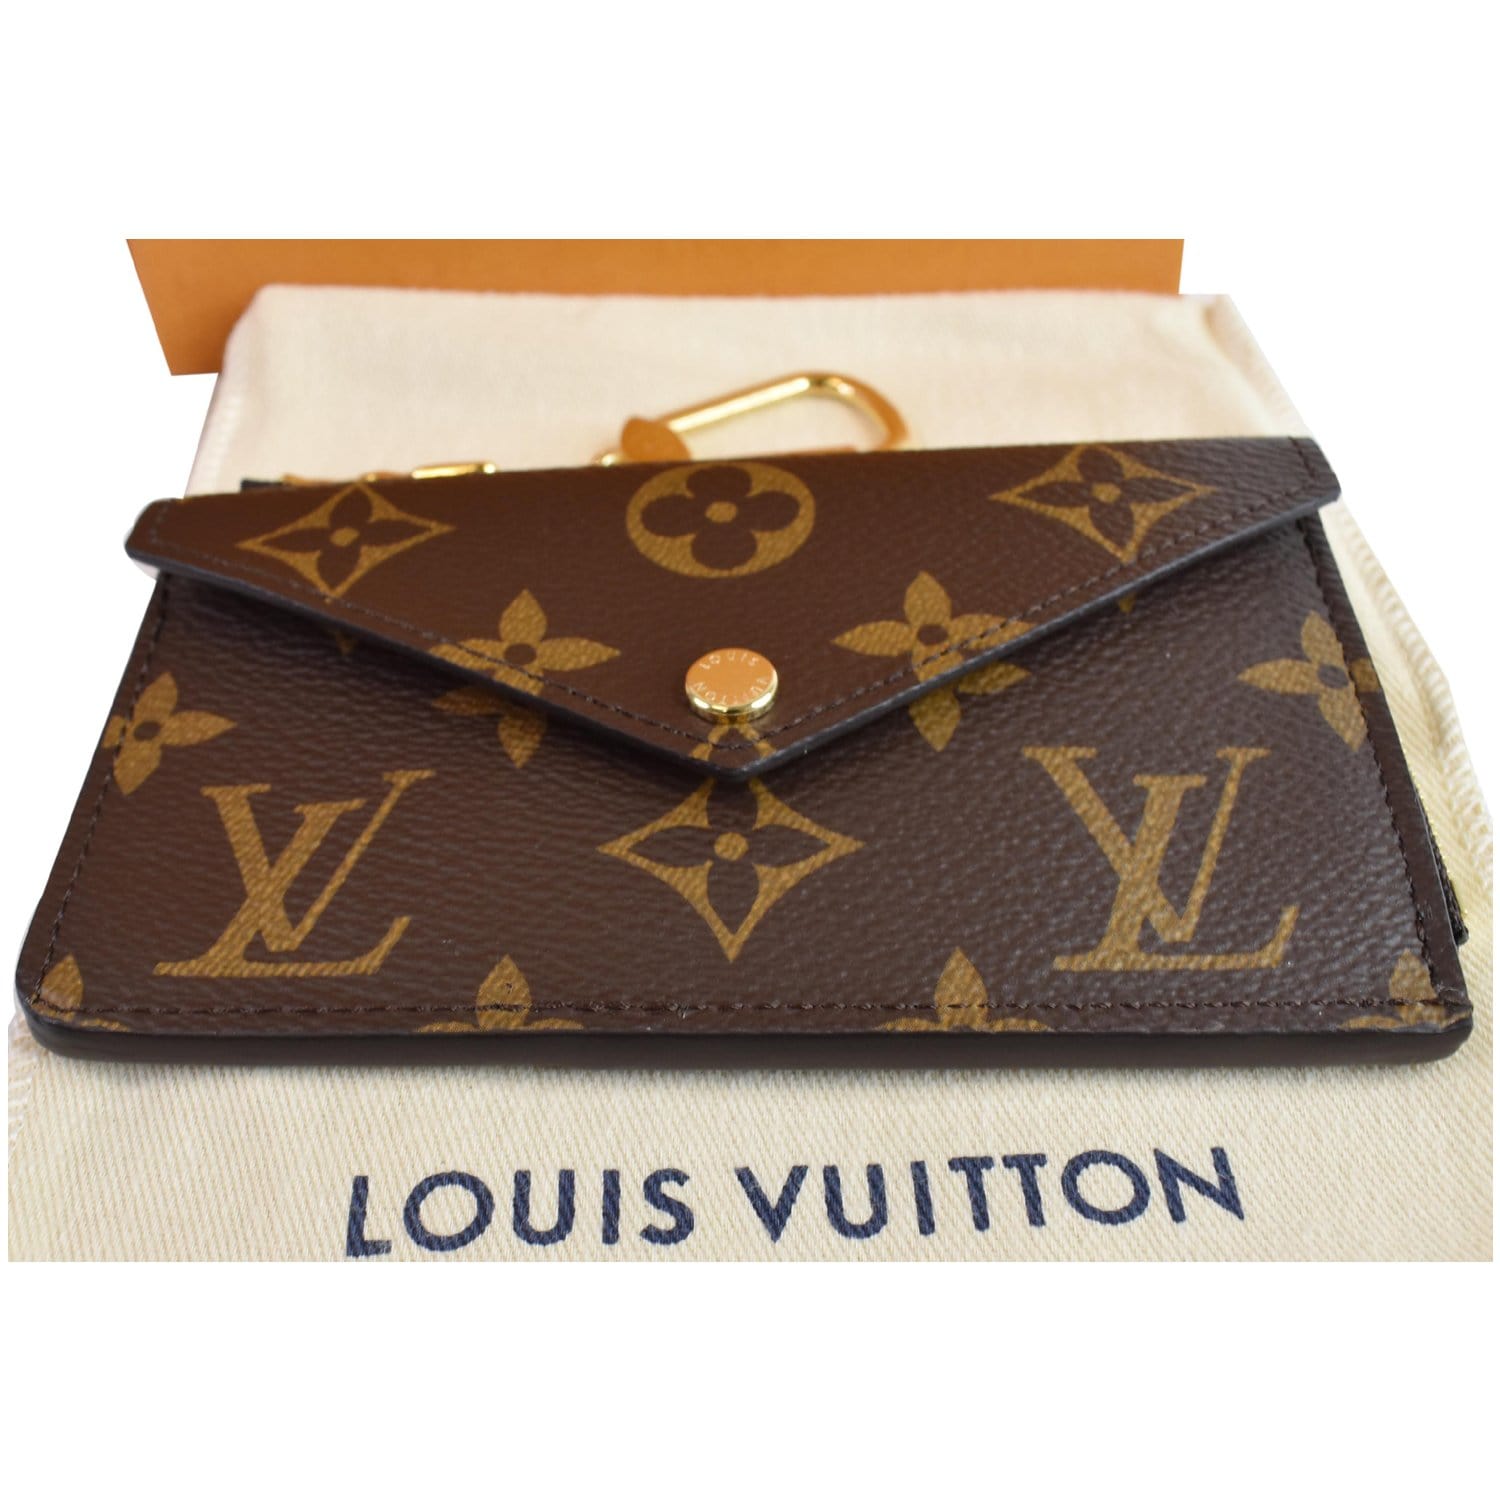 Louis Vuitton Recto Verso Card Holder - Couture USA